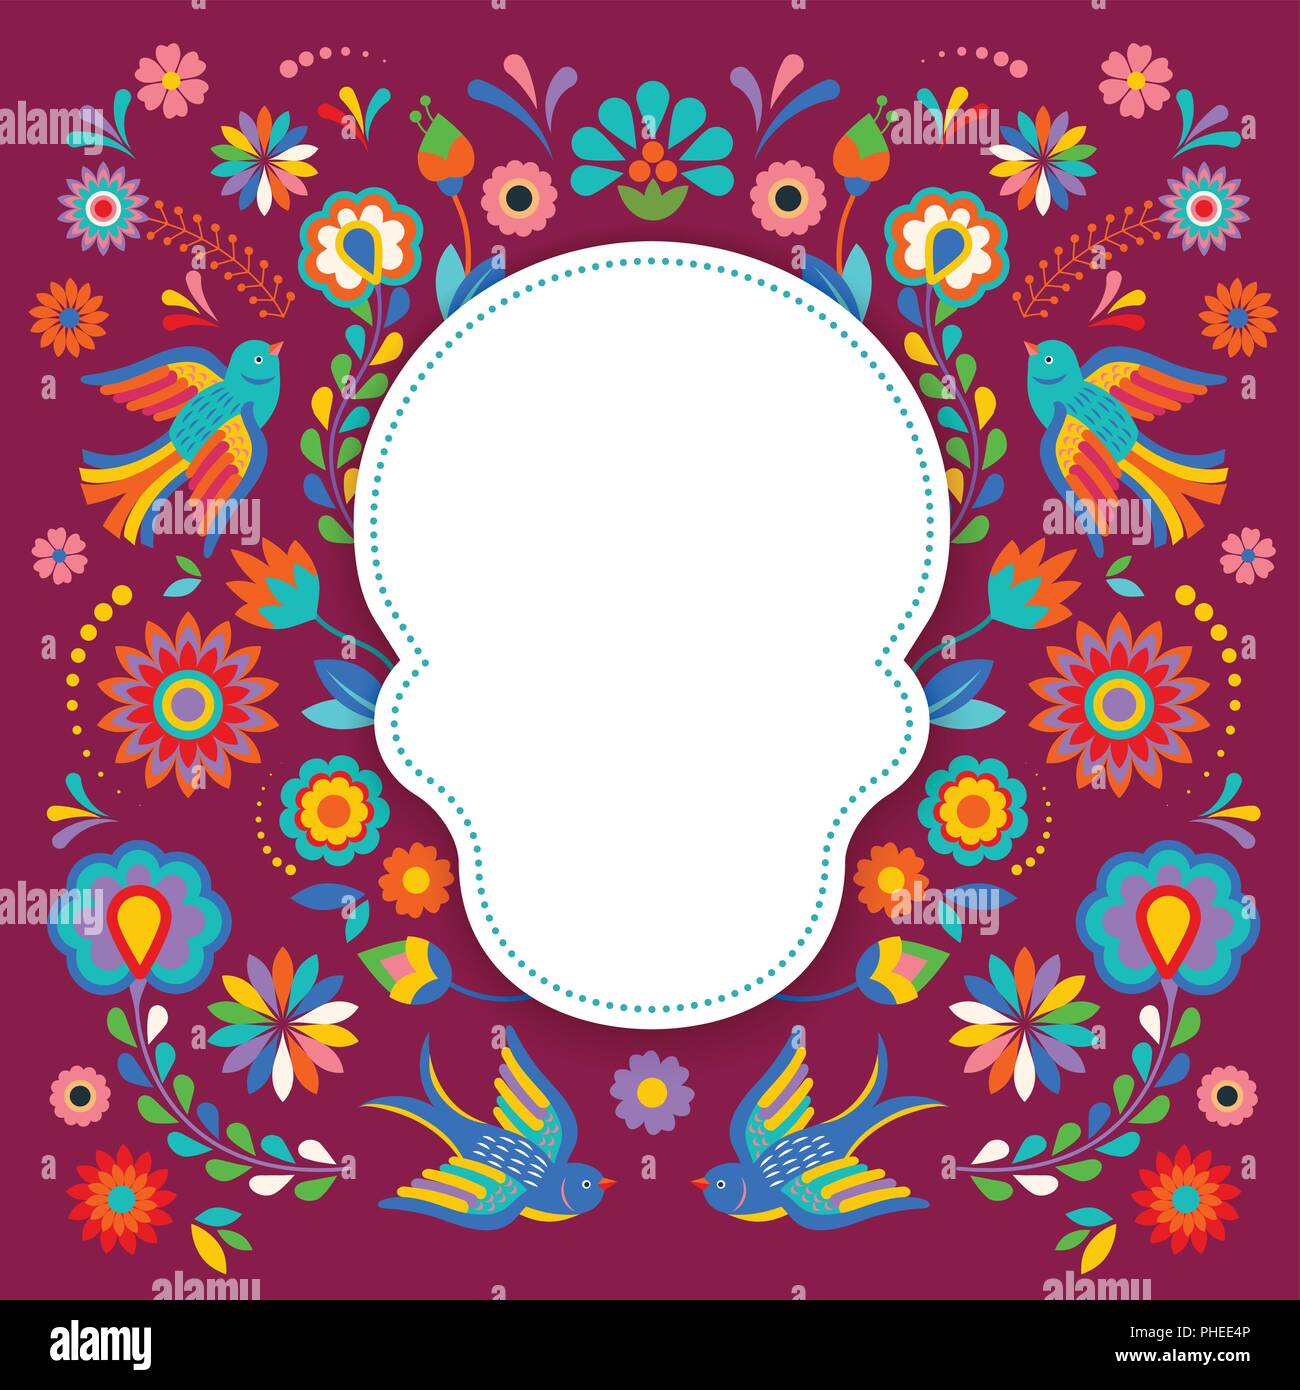 Fête des morts, Dia de los, moertos avec bannière fleurs mexicaines colorées. Fiesta, maison de vacances, partie de l'affiche flyer, cartes de vœux Illustration de Vecteur